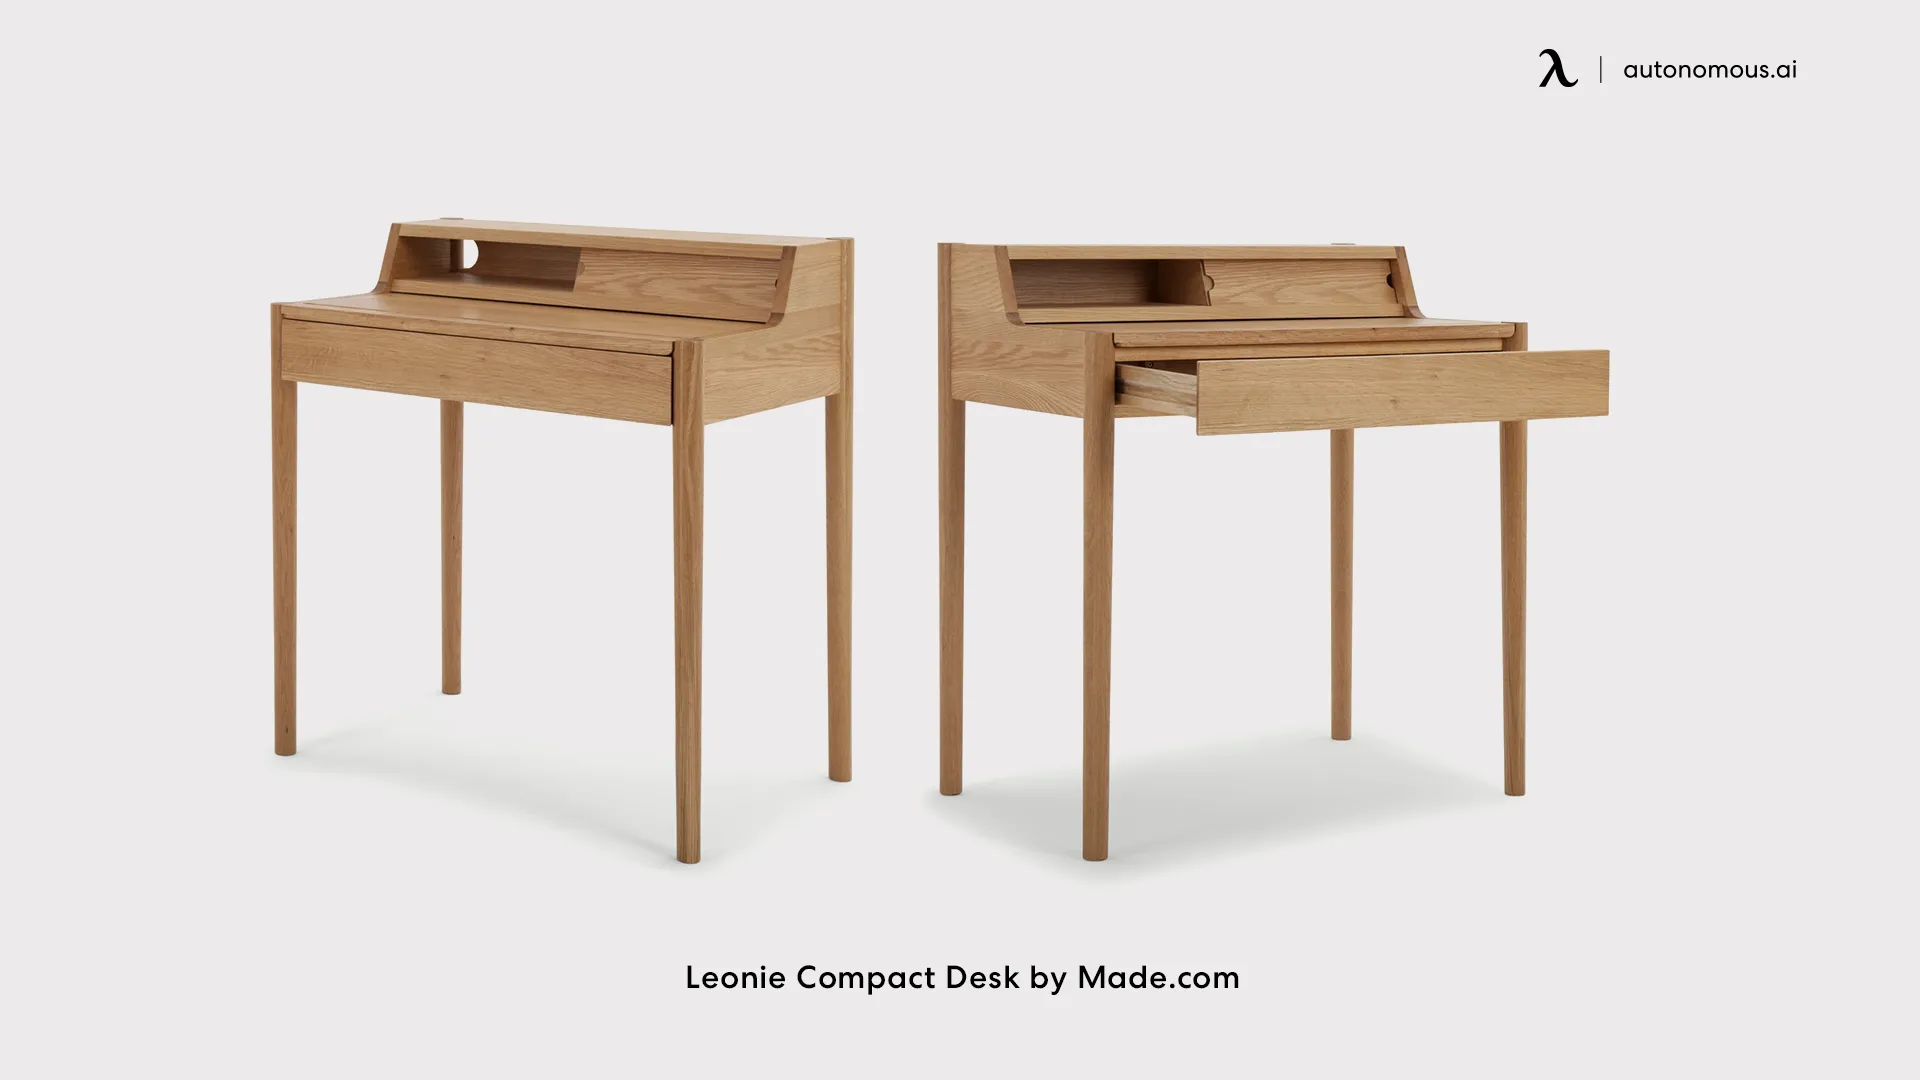 Leonie Compact Desk